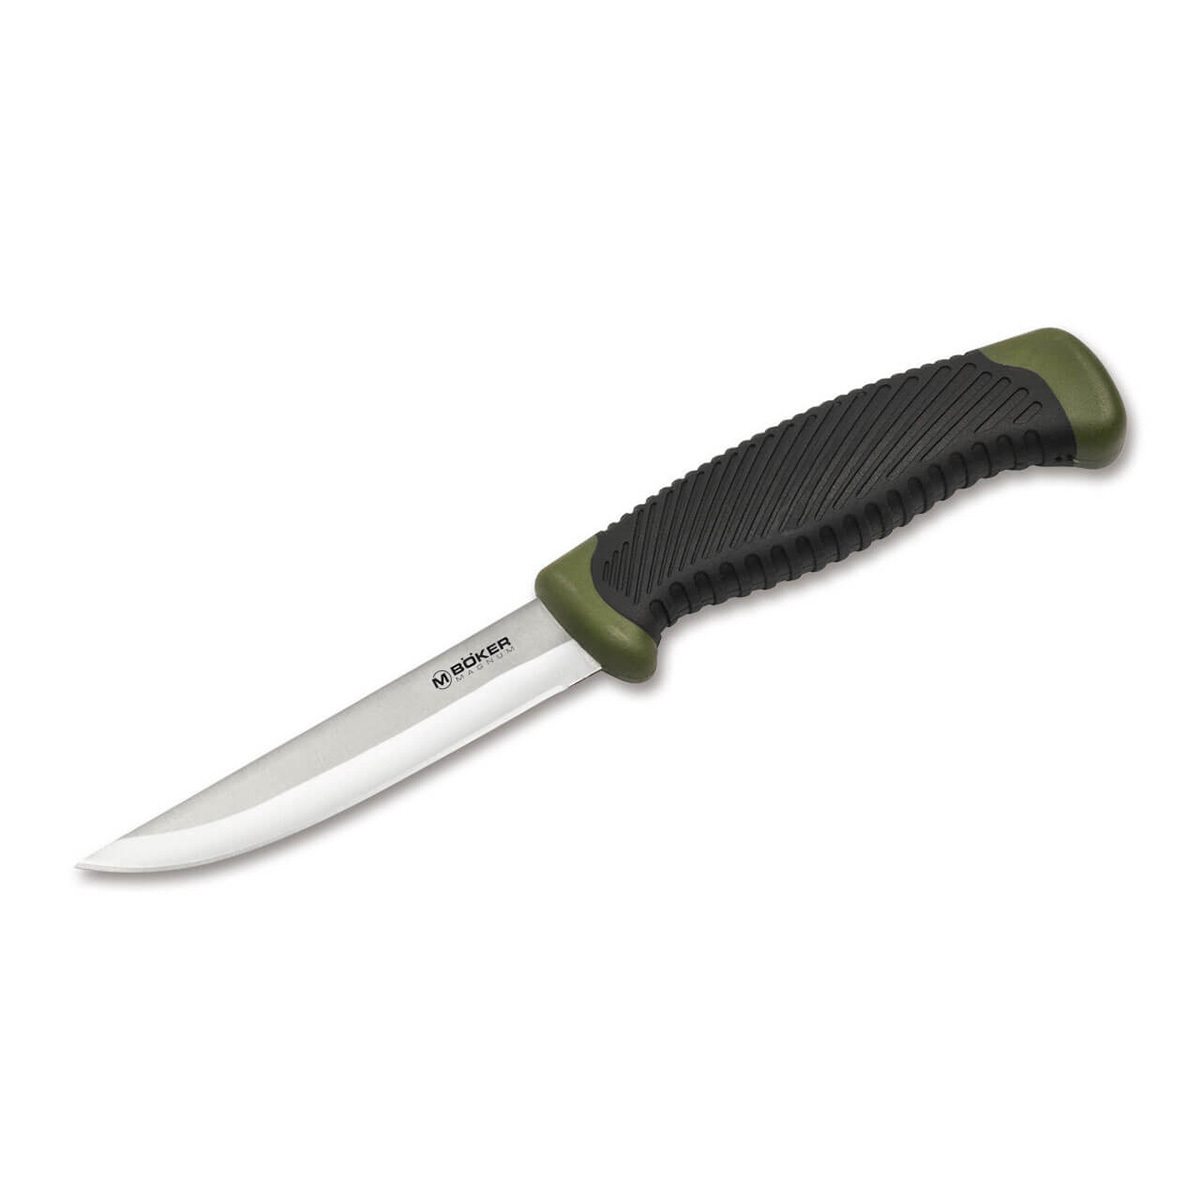 Нож рыбацкий с фиксированным клинком Magnum Falun Green, сталь 420 Satin Plain, рукоять полипропилен/термопластик нож с фиксированным клинком ontario rd4 micarta серрейтор